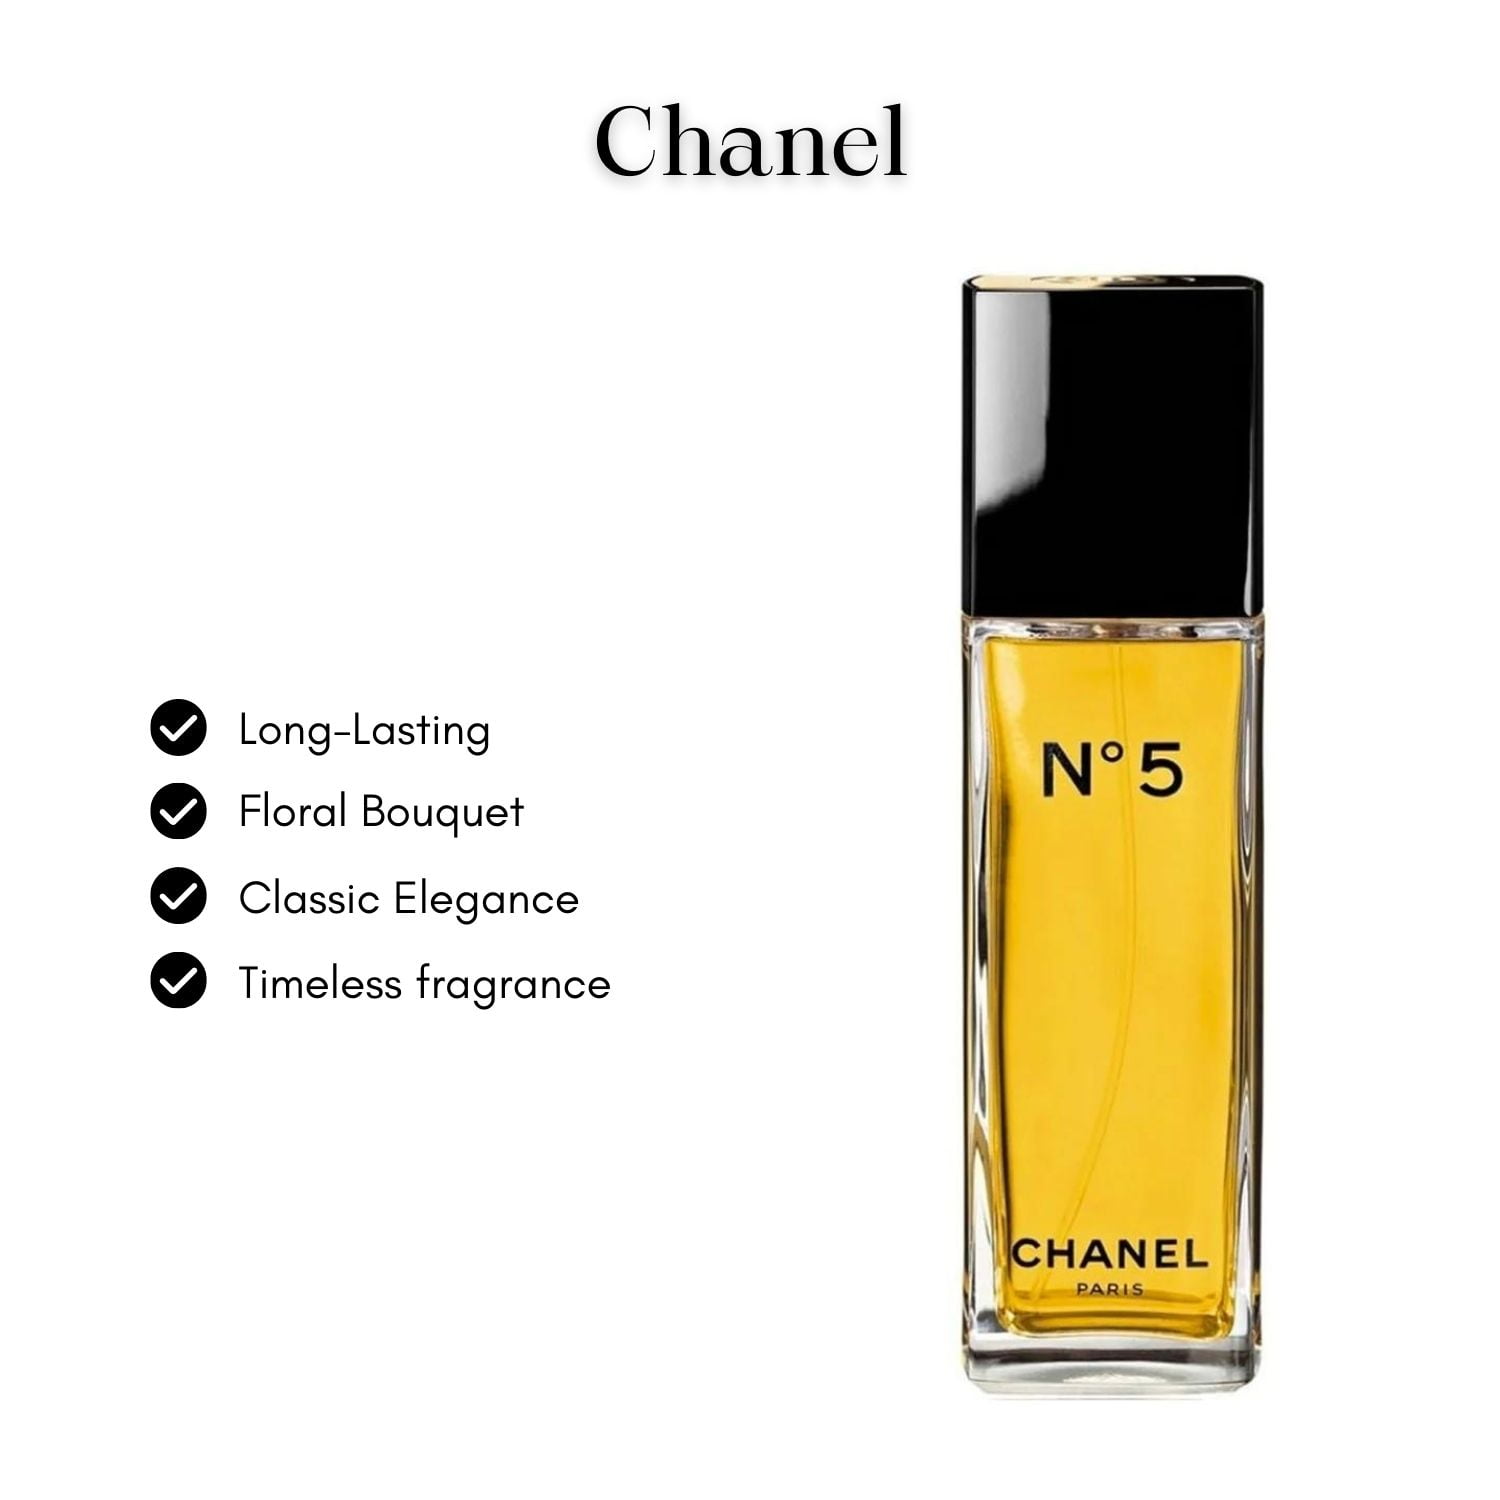 Chanel No 5 Eau Premiere Vaporisateur Spray 50 ml / 1.7 oz